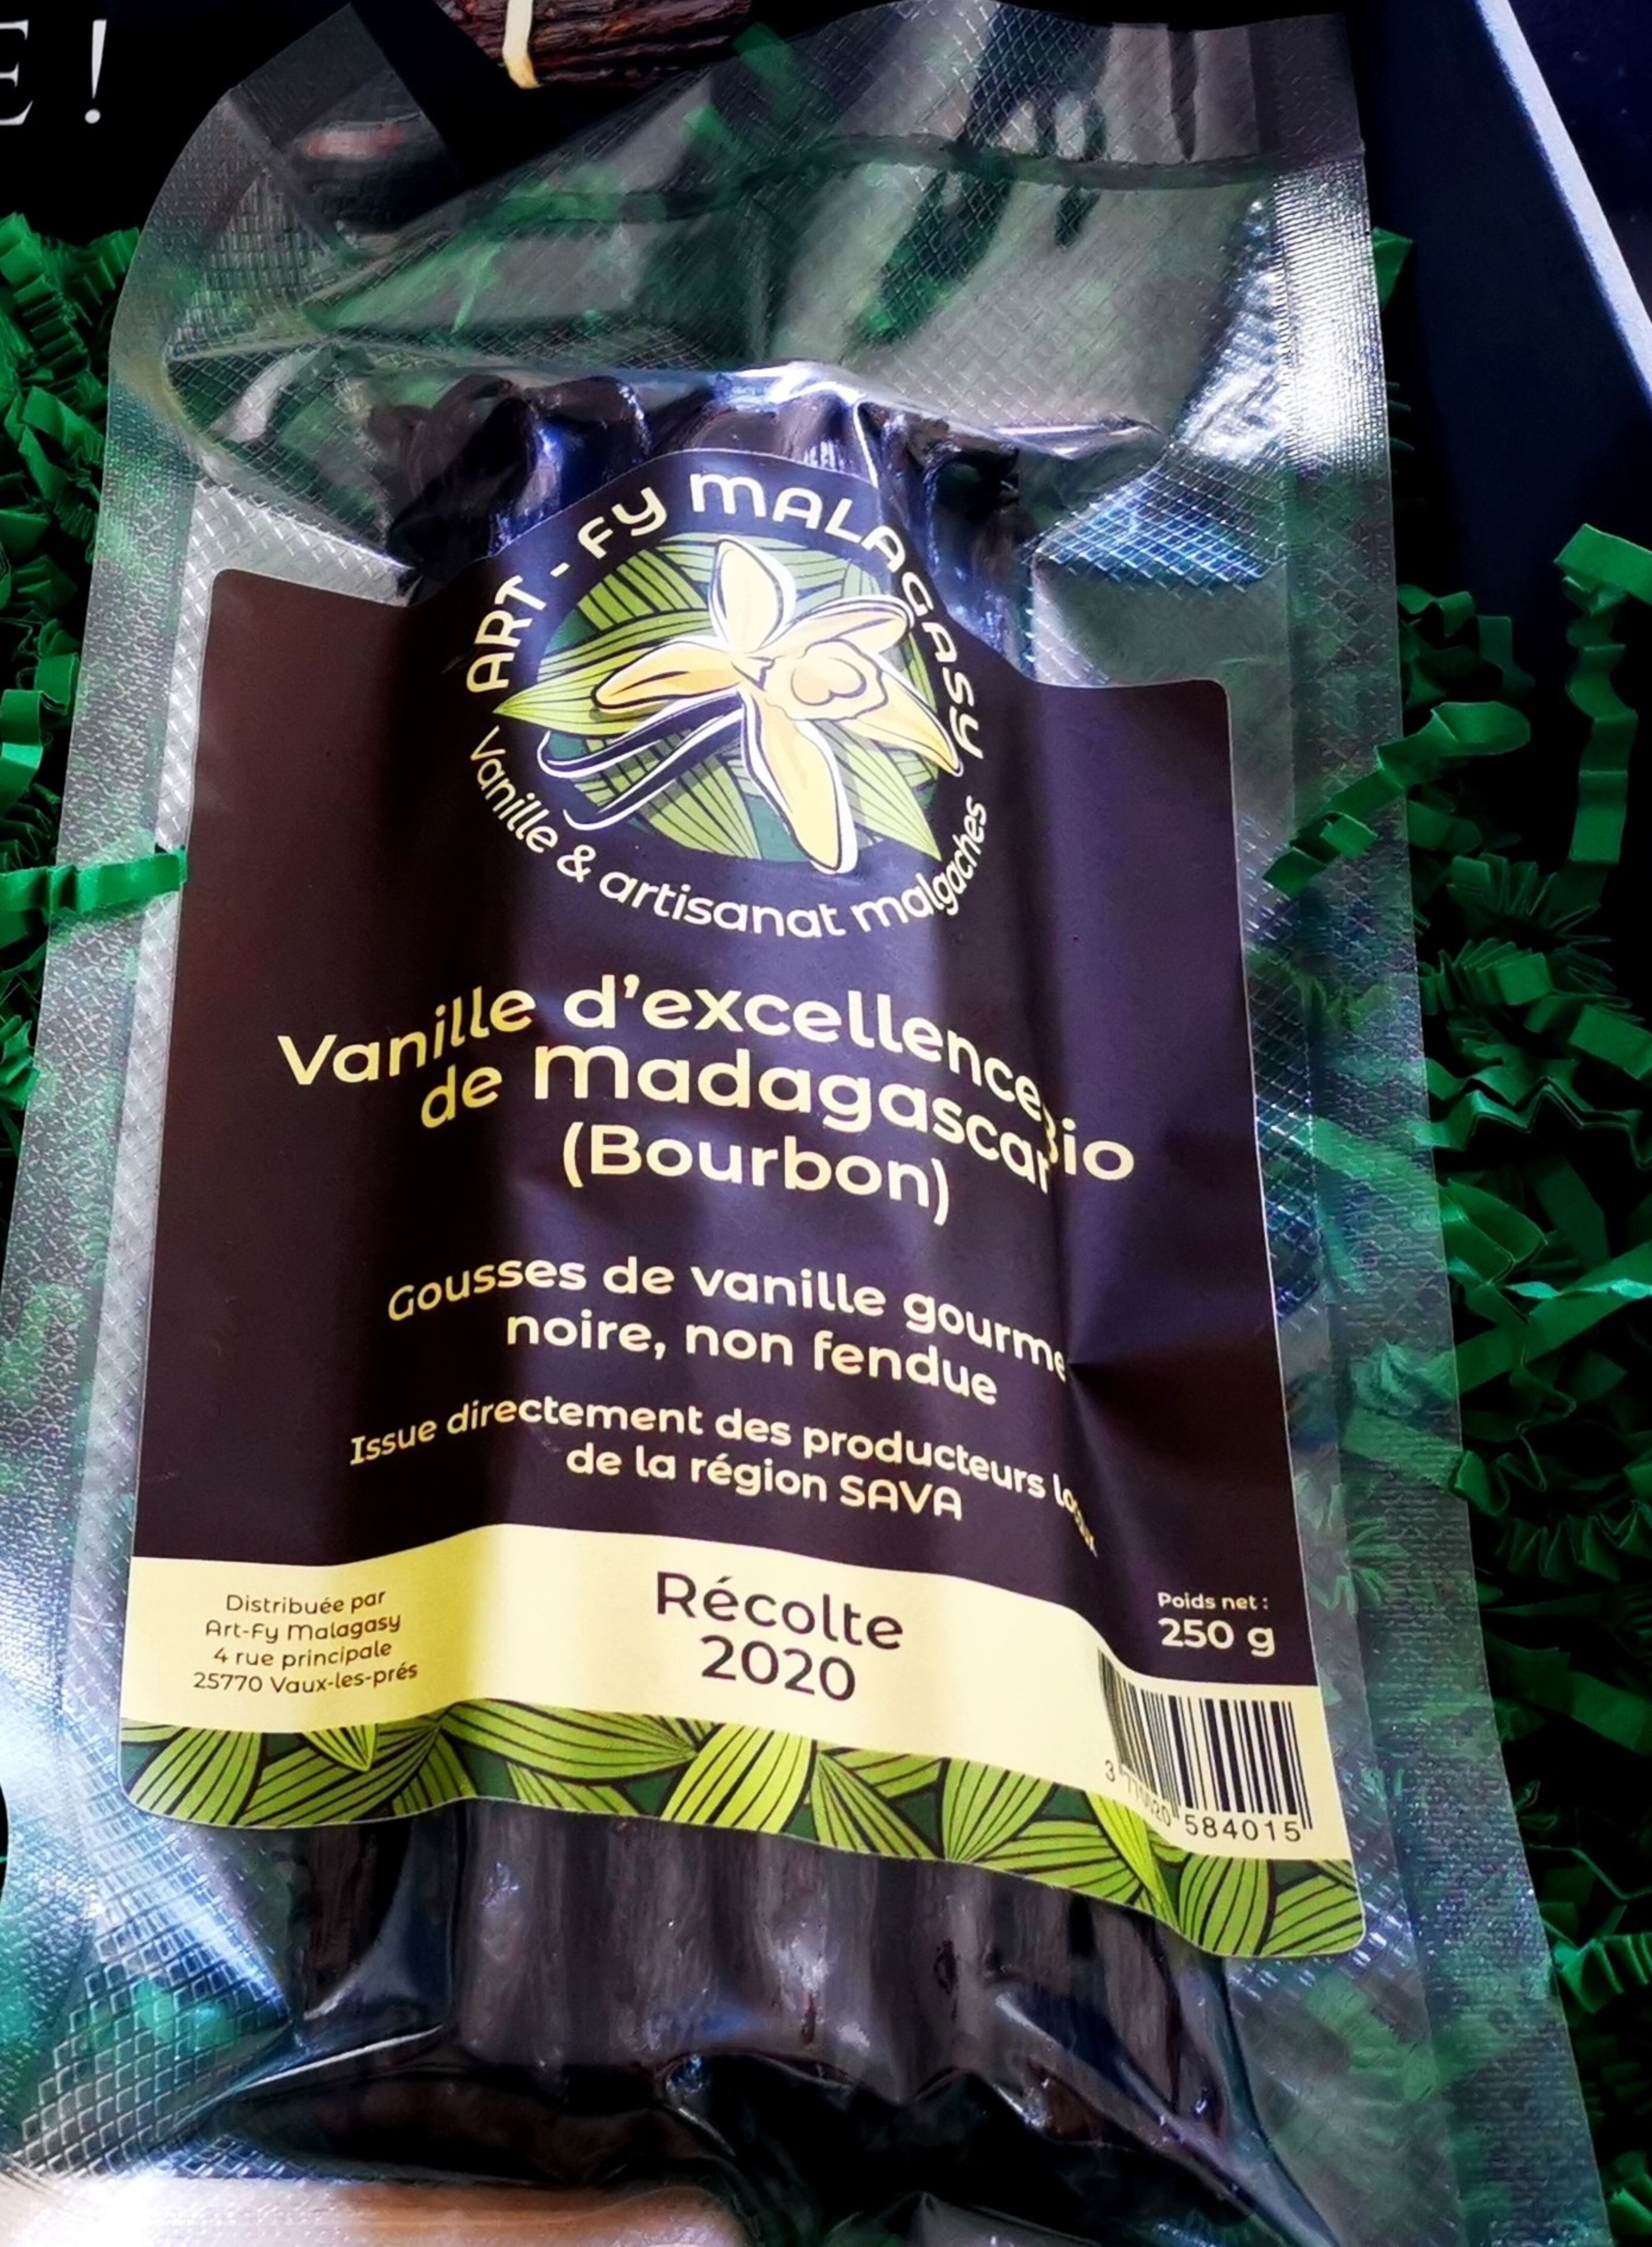 Gousses de vanille de Madagascar - Agriculture Durable - Fair Trade